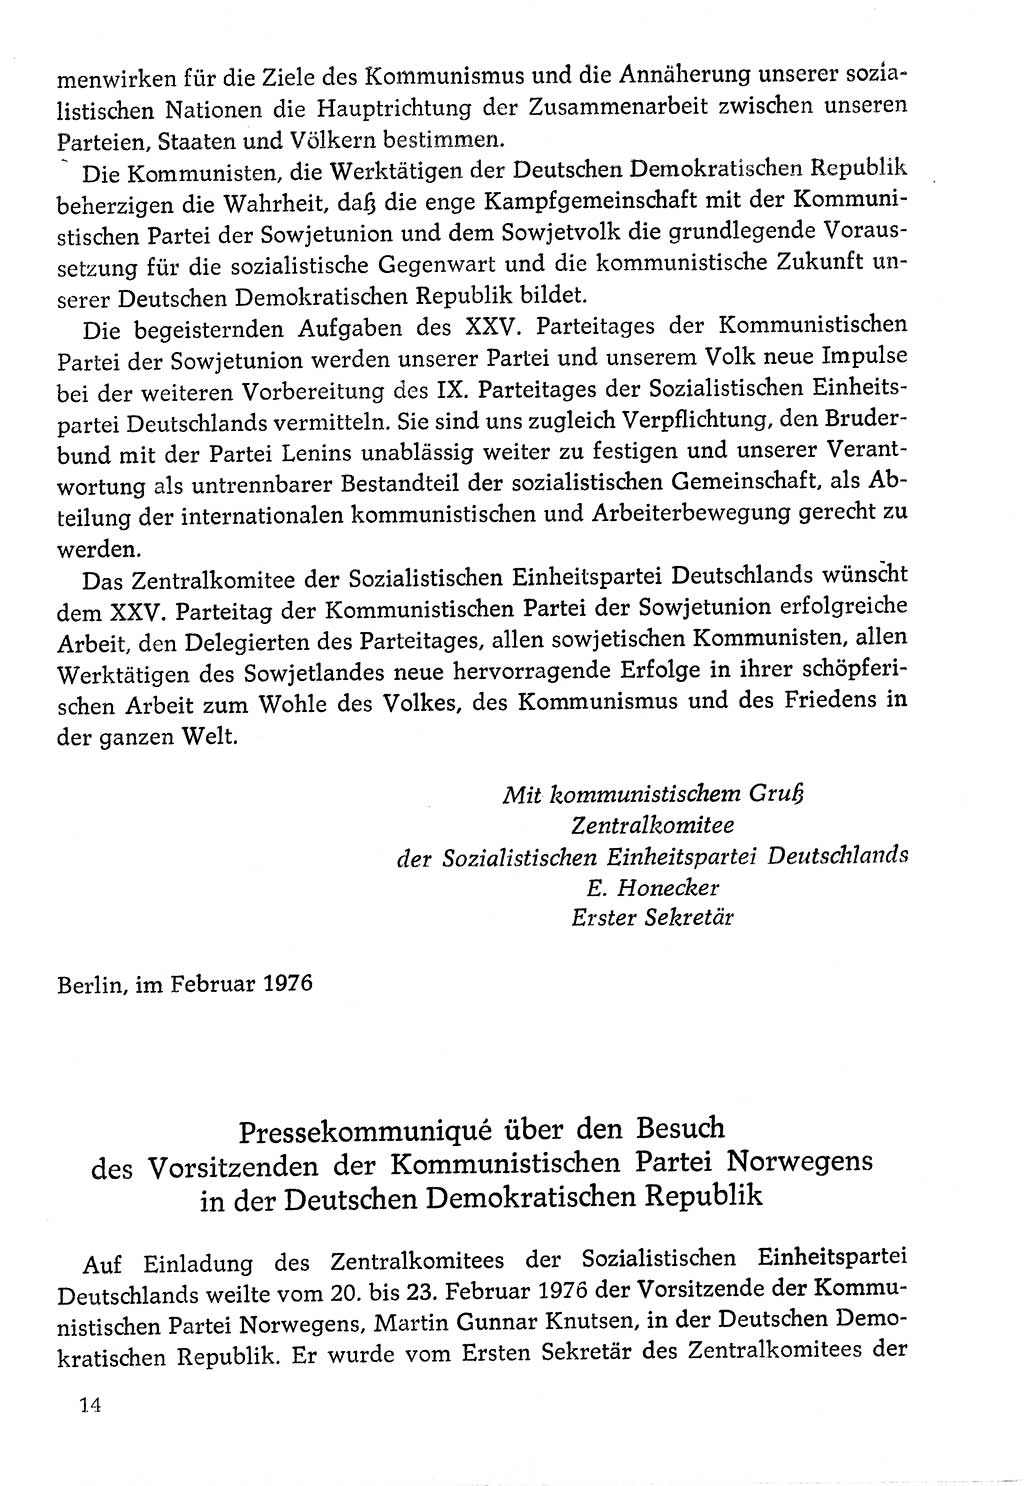 Dokumente der Sozialistischen Einheitspartei Deutschlands (SED) [Deutsche Demokratische Republik (DDR)] 1976-1977, Seite 14 (Dok. SED DDR 1976-1977, S. 14)